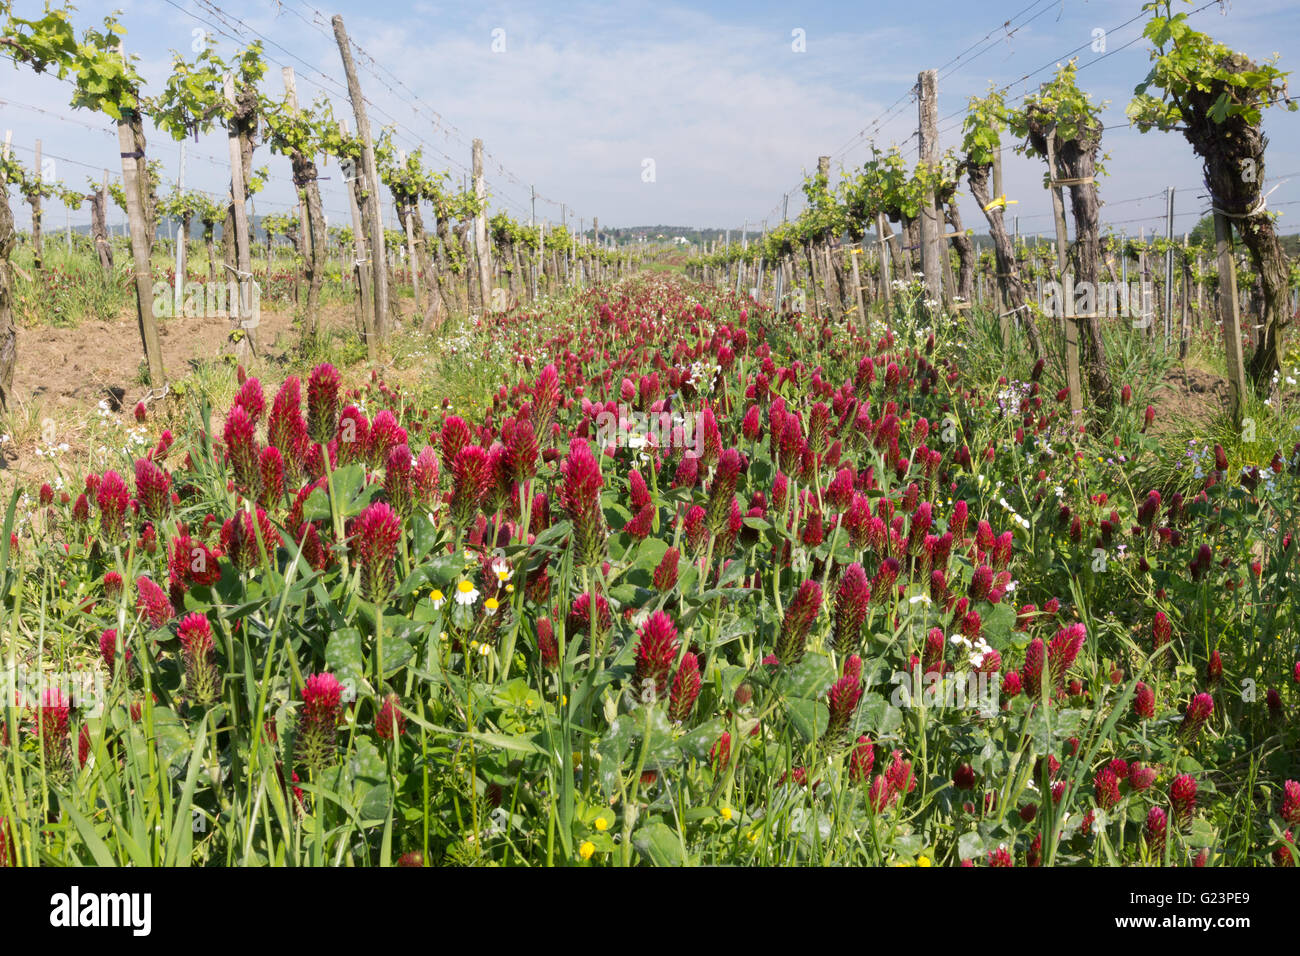 Trifolium incarnatum, noto come trifoglio cremisi (o trifoglio italiano), cresce tra le viti in Austria per la fissazione dell'azoto. Tema: Sovvenzione dell'UE Foto Stock